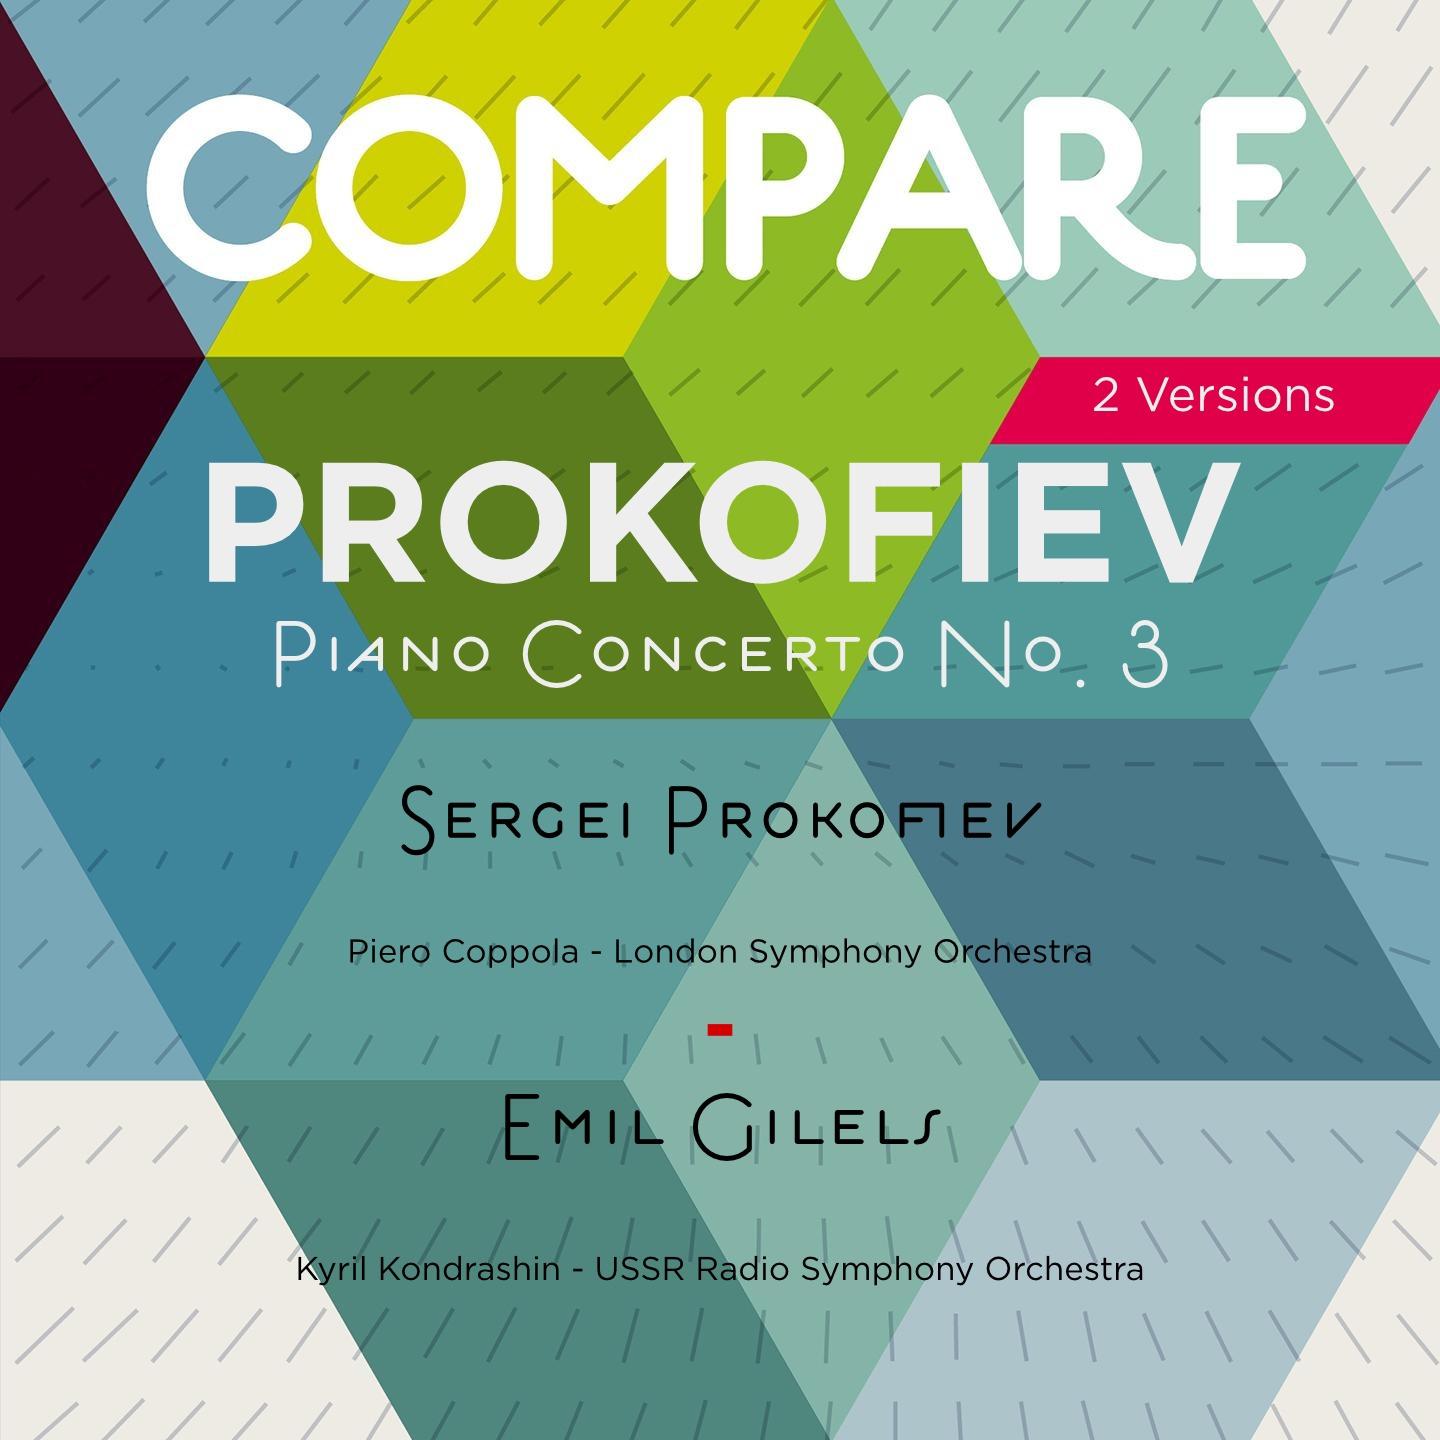 Prokofiev: Piano Concerto No. 3, Sergei Prokofiev vs. Emil Gilels